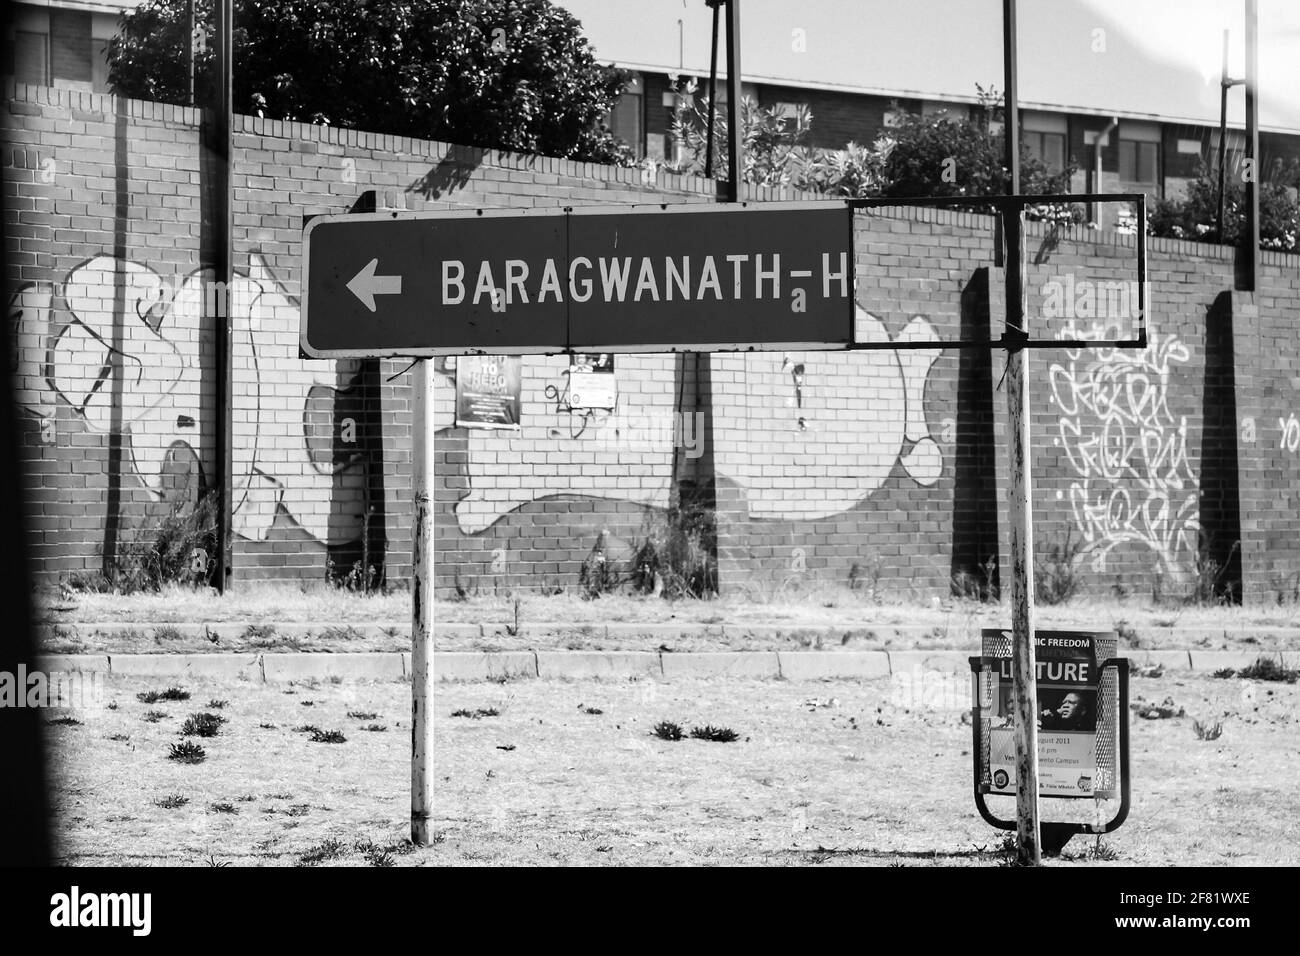 JOHANNESBURG, SUD AFRICA - 13 marzo 2021: Johannesburg, Sud Africa - 11 settembre 2011: Indicazioni stradali rotte per l'ospedale Baragwanath di Soweto Foto Stock